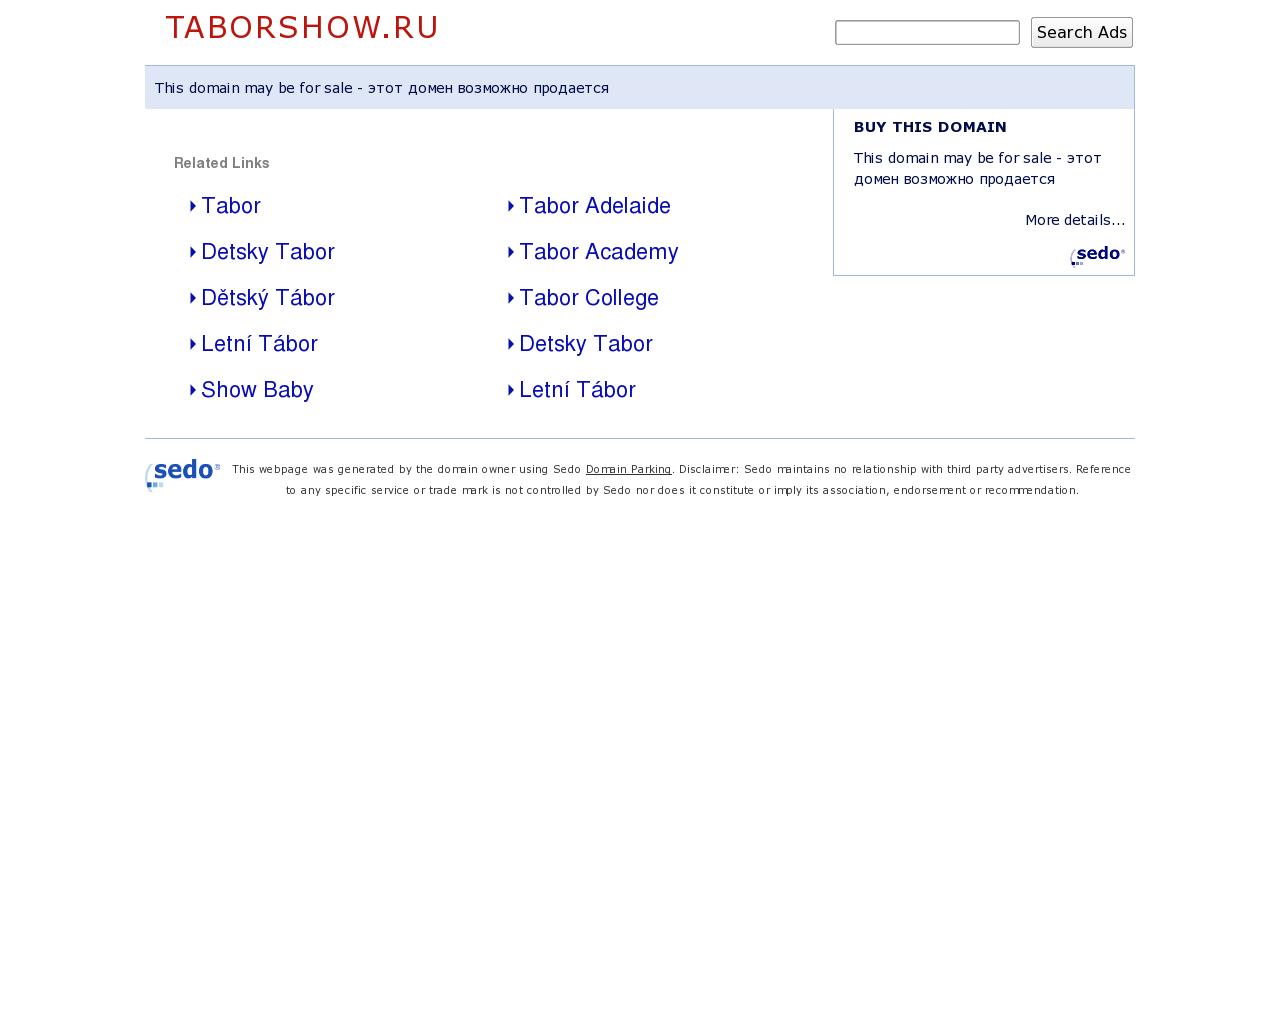 Изображение сайта taborshow.ru в разрешении 1280x1024